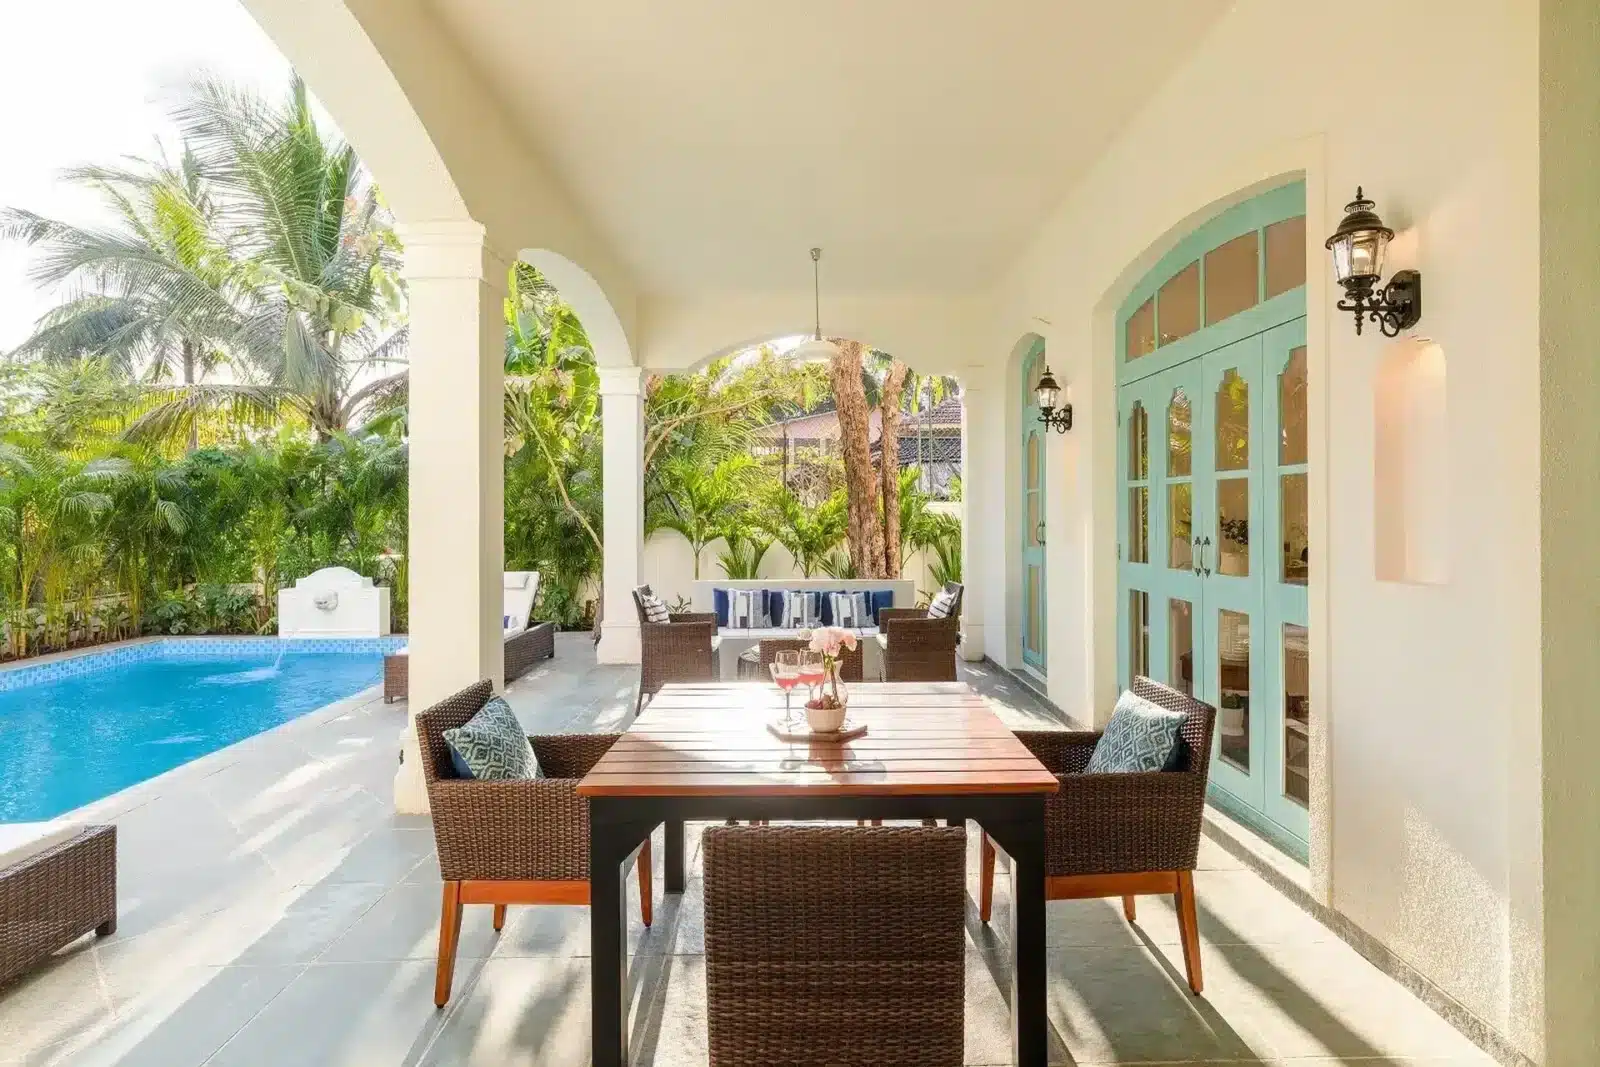 Silvio A - Private Villa in Goa - Stunning Seating Area